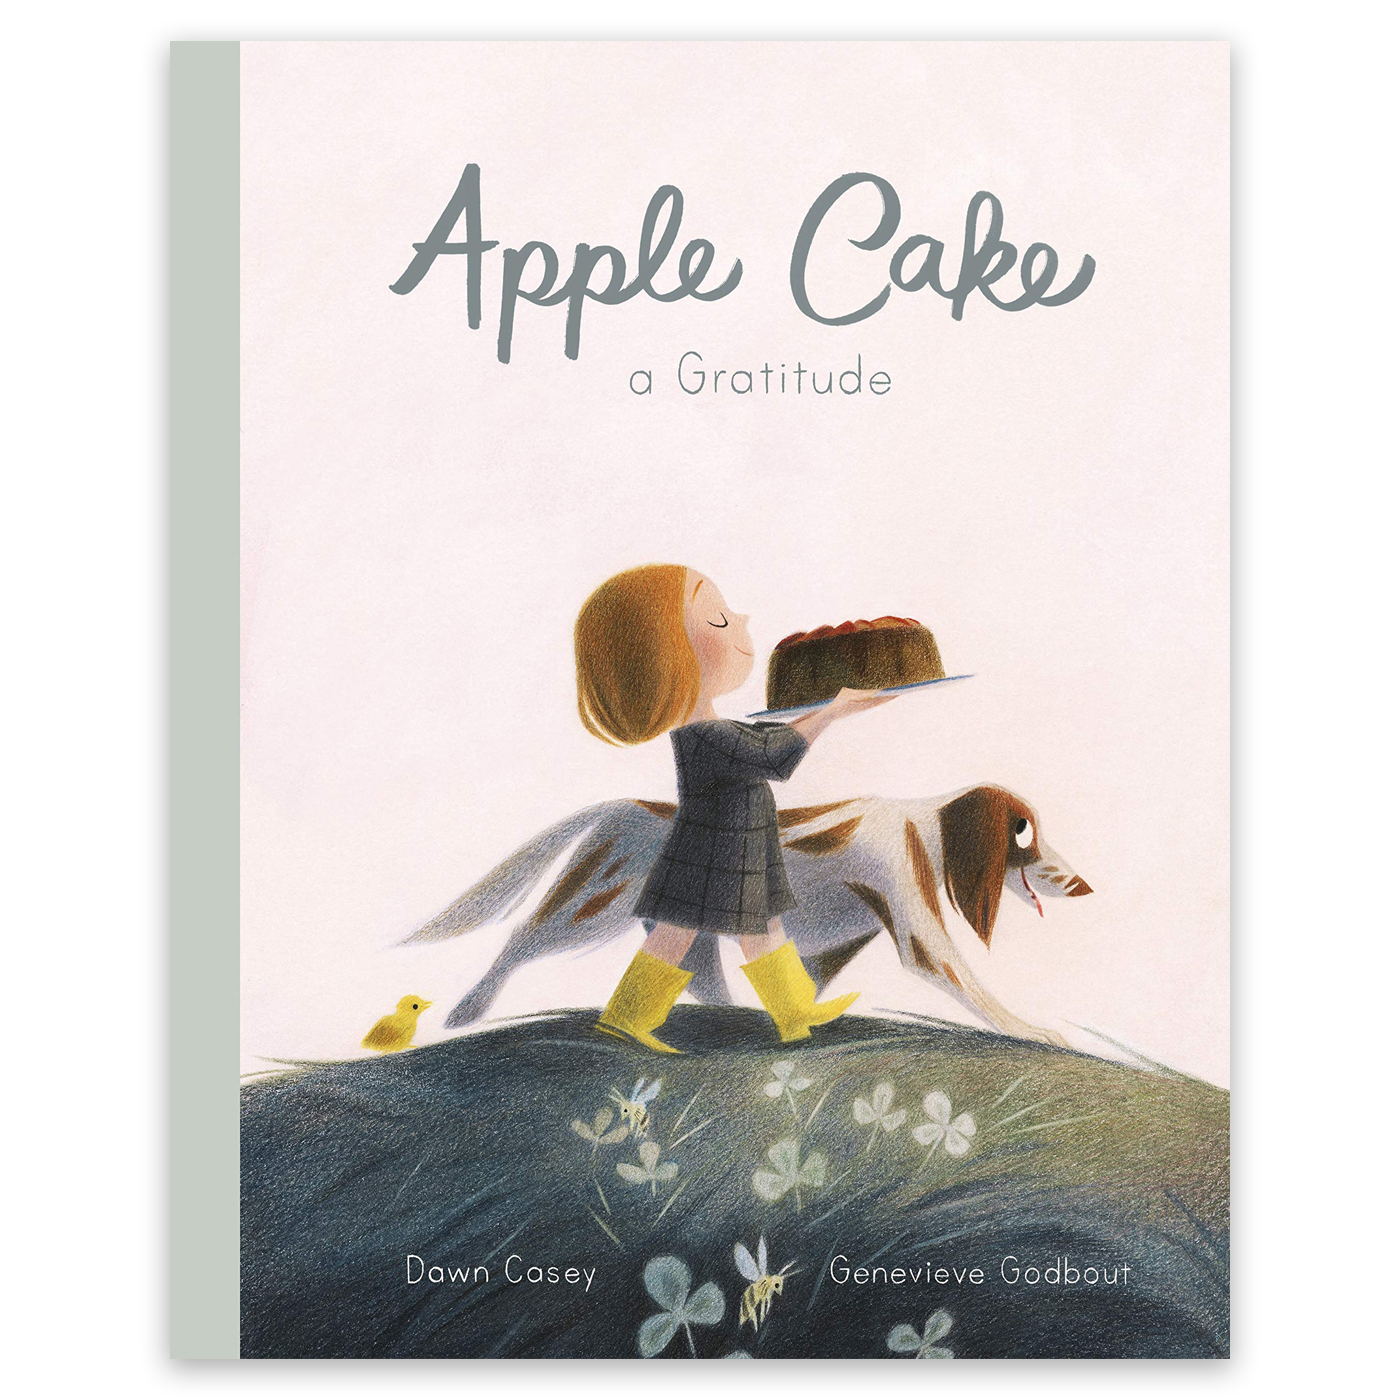  Apple Cake: A Gratitude